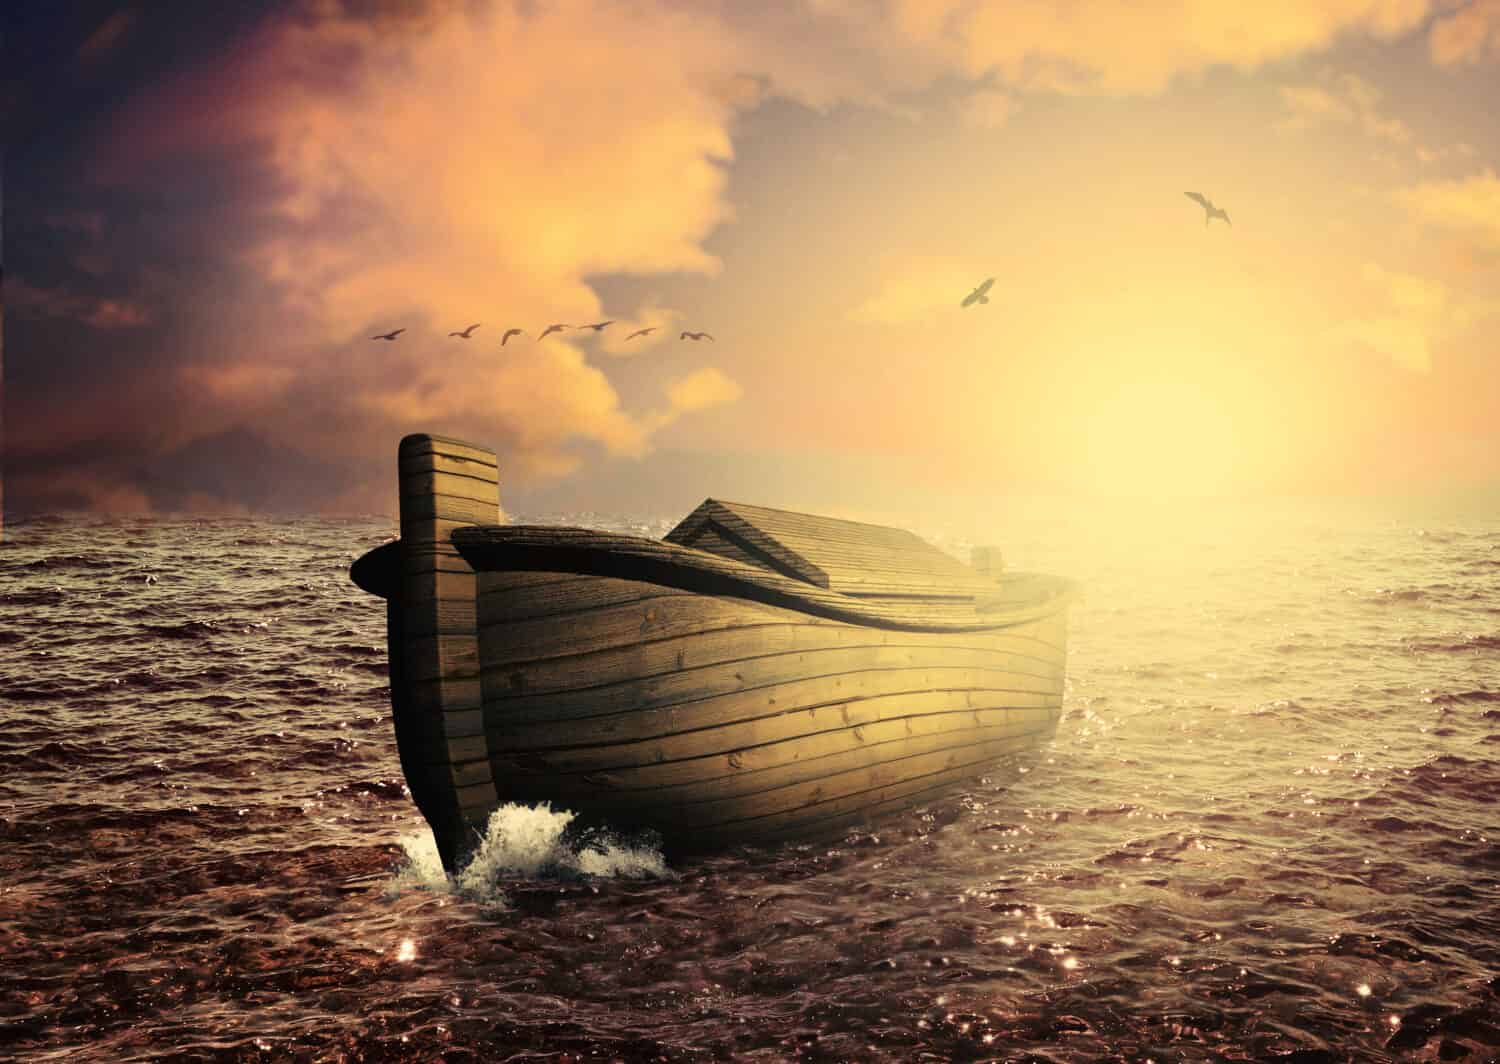 Noah's ark 3D rendering